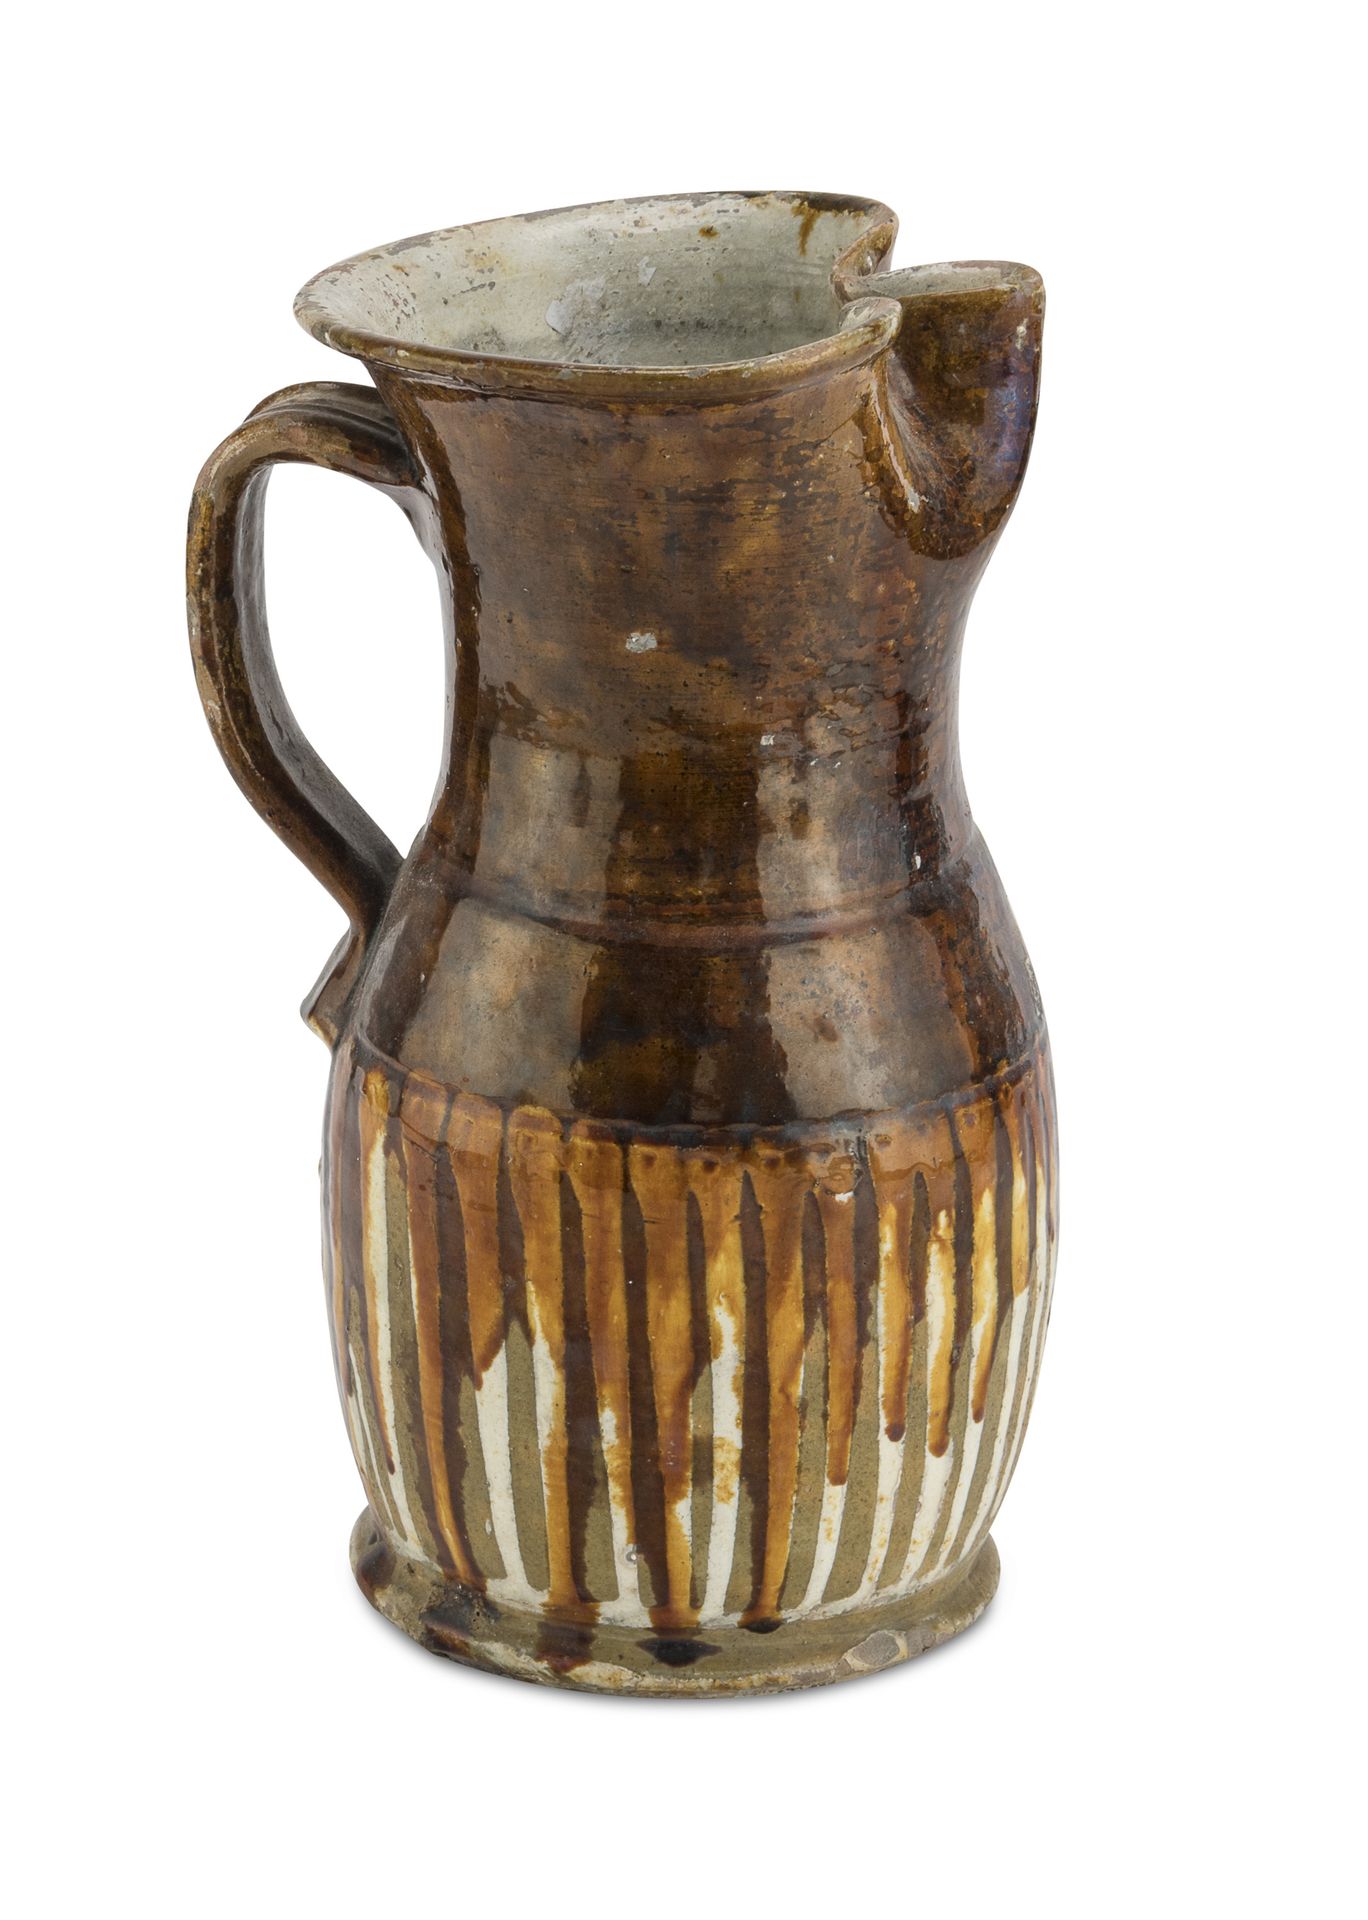 Null 陶罐，Terlizzi 19世纪末

铸造棕色珐琅，有白色条纹。白色搪瓷内壁。

尺寸 cm. 30 x 19.